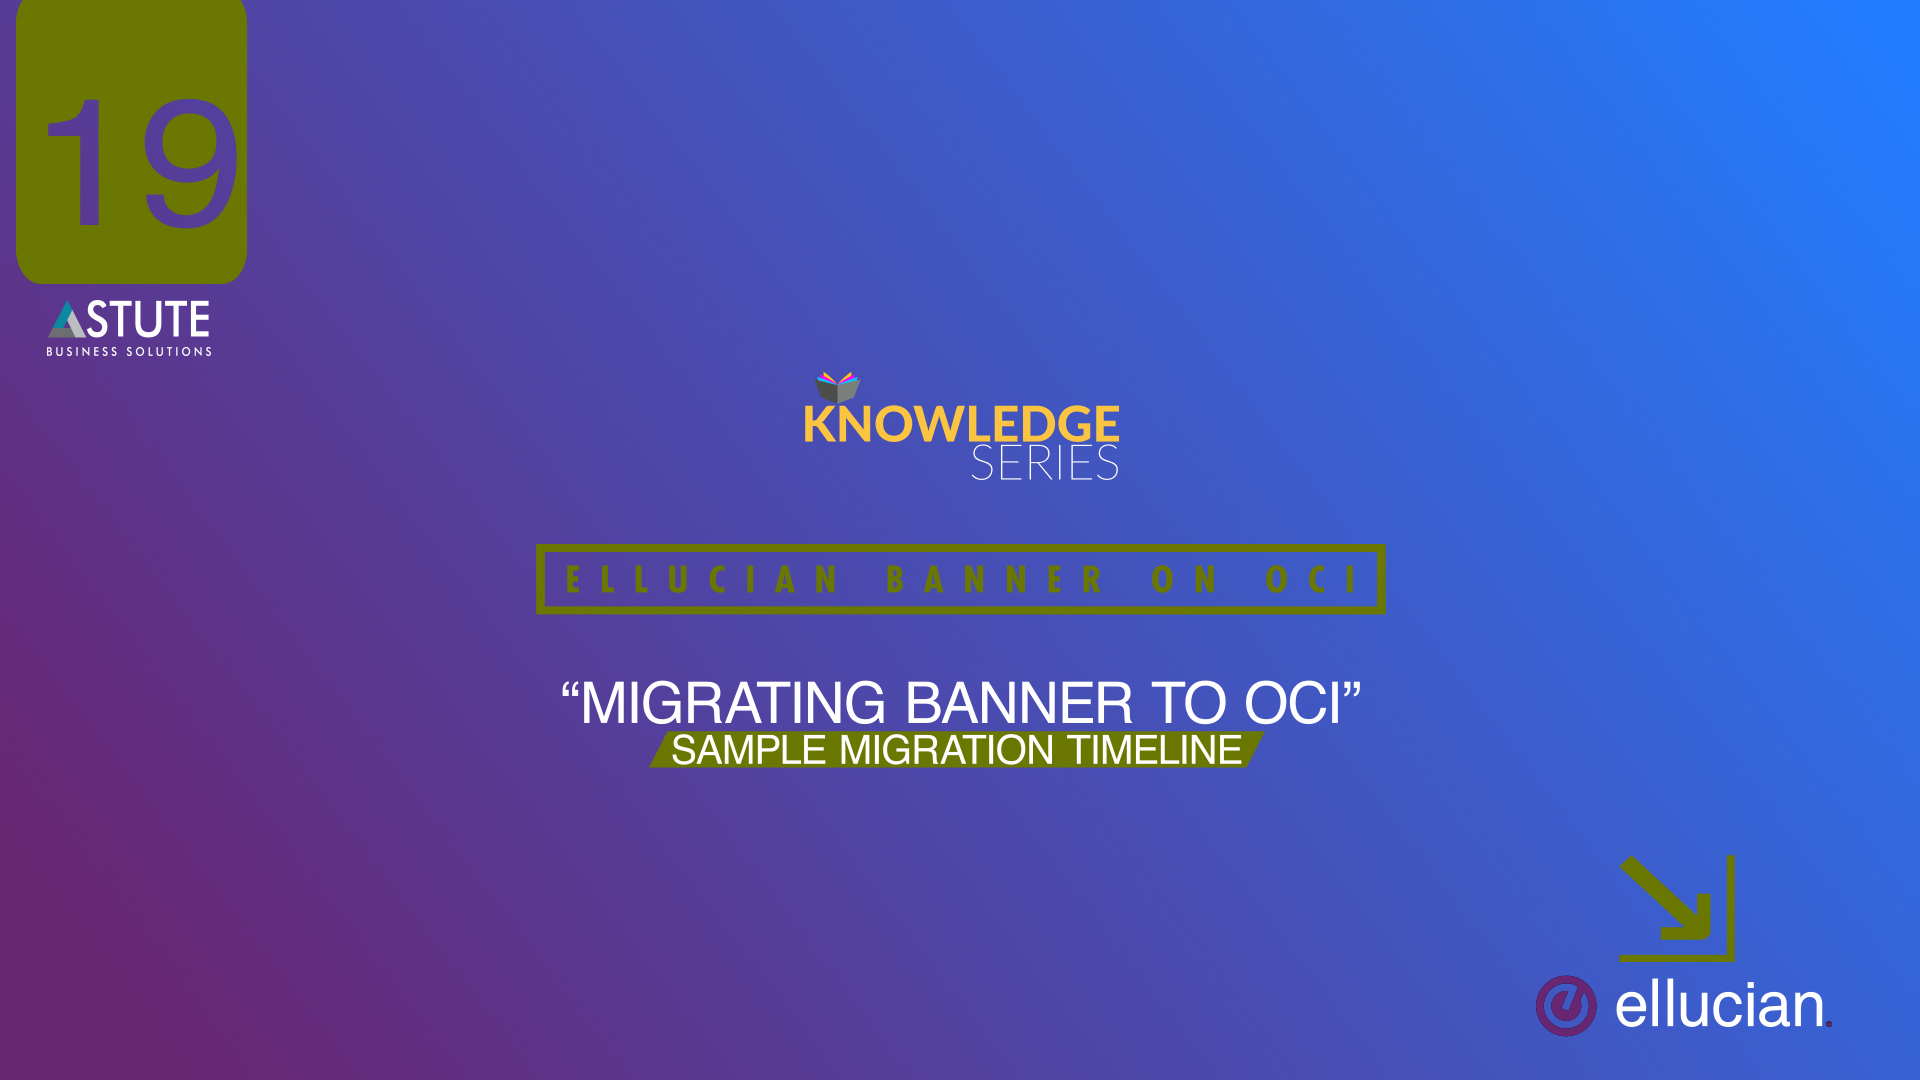 #19 Ellucian _Migrating Banner To OCI- Sample Migration Timeline